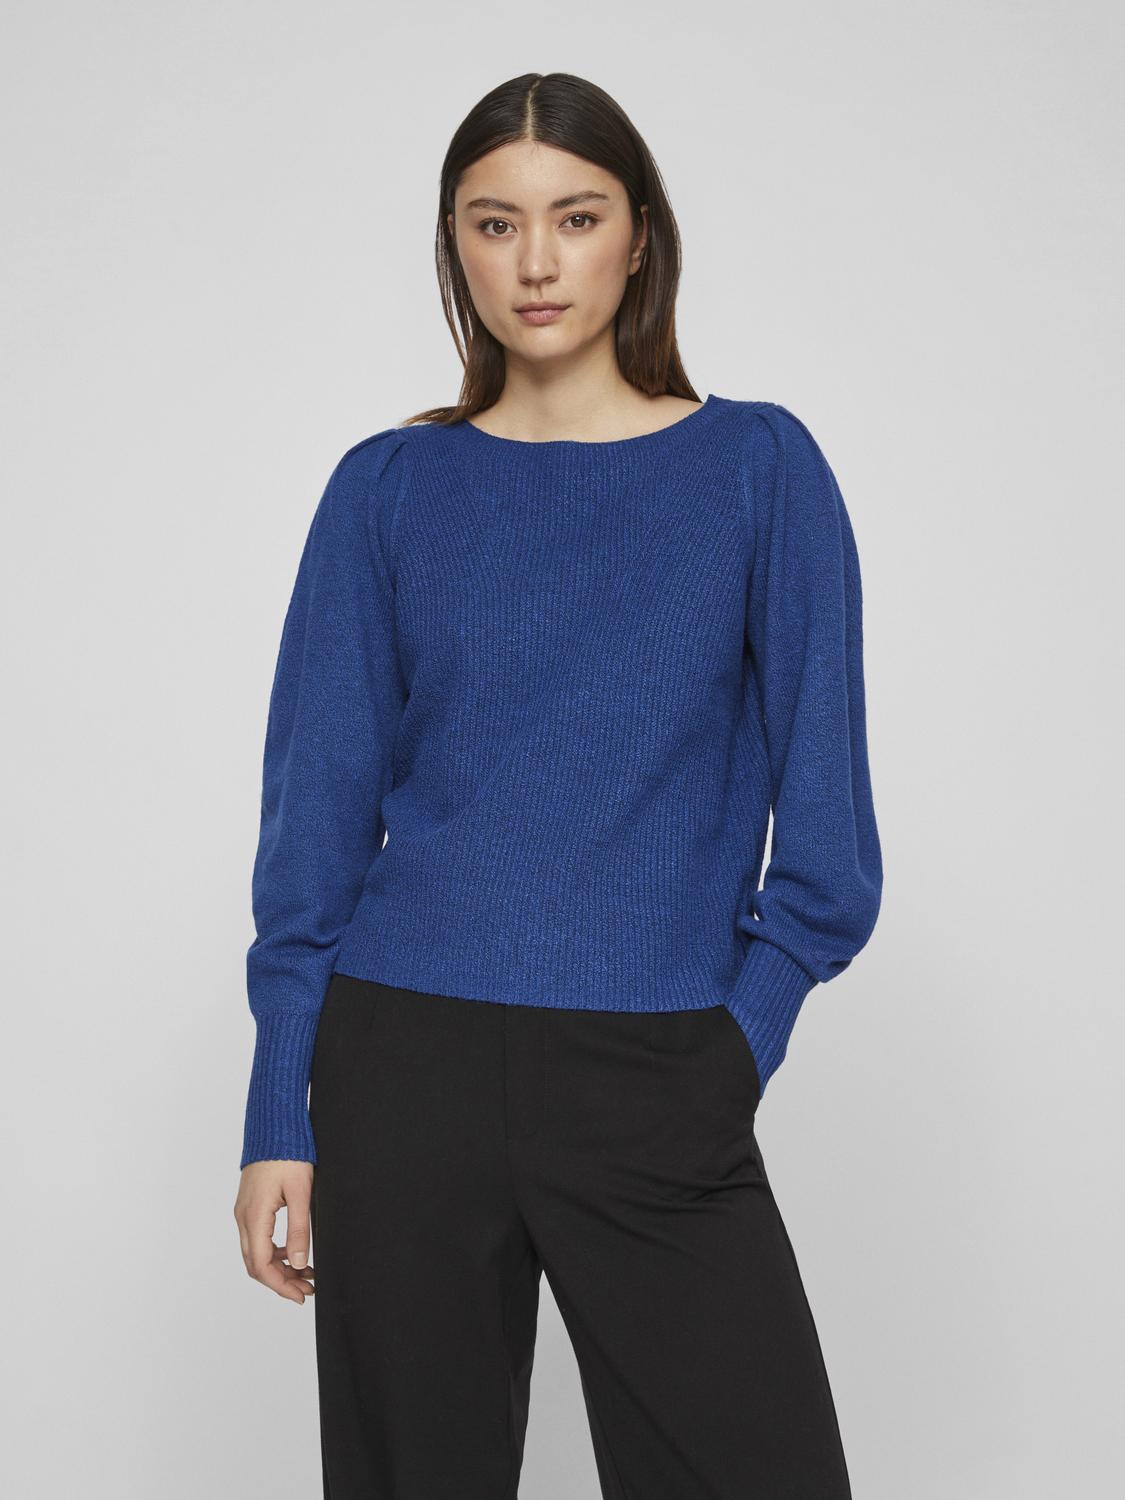 VIMETT Pullover - True Blue